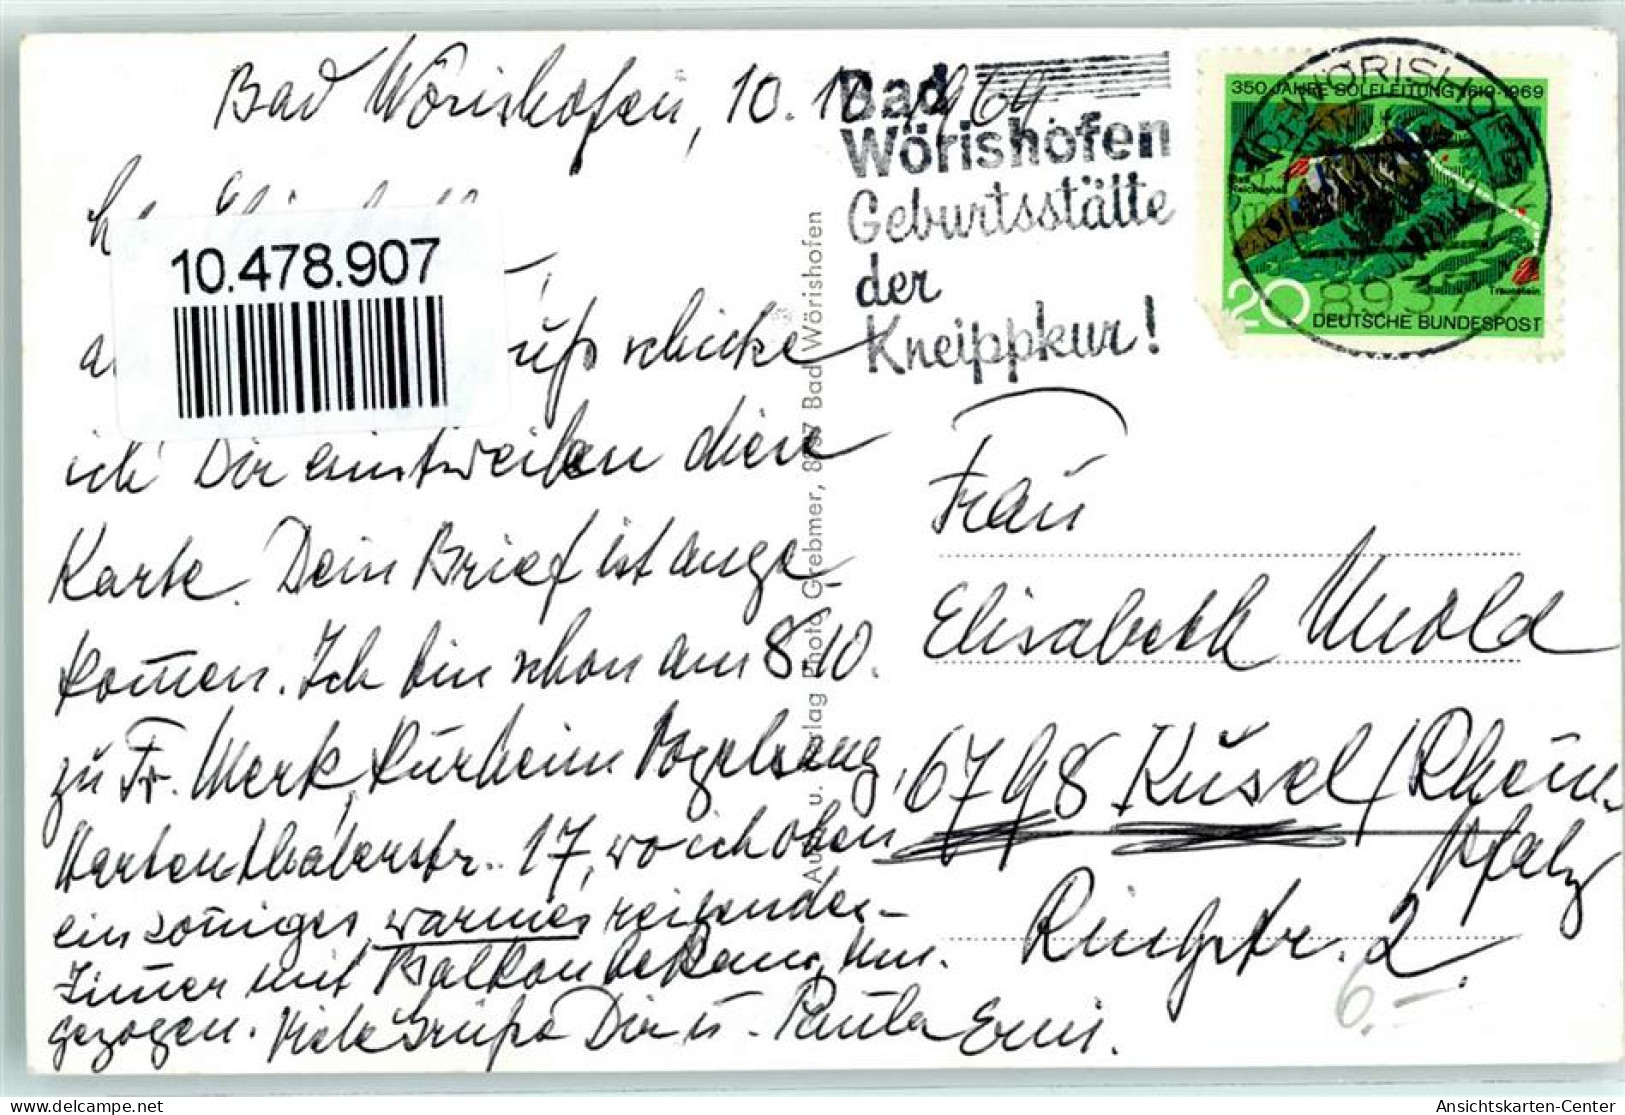 10478907 - Bad Woerishofen - Bad Woerishofen